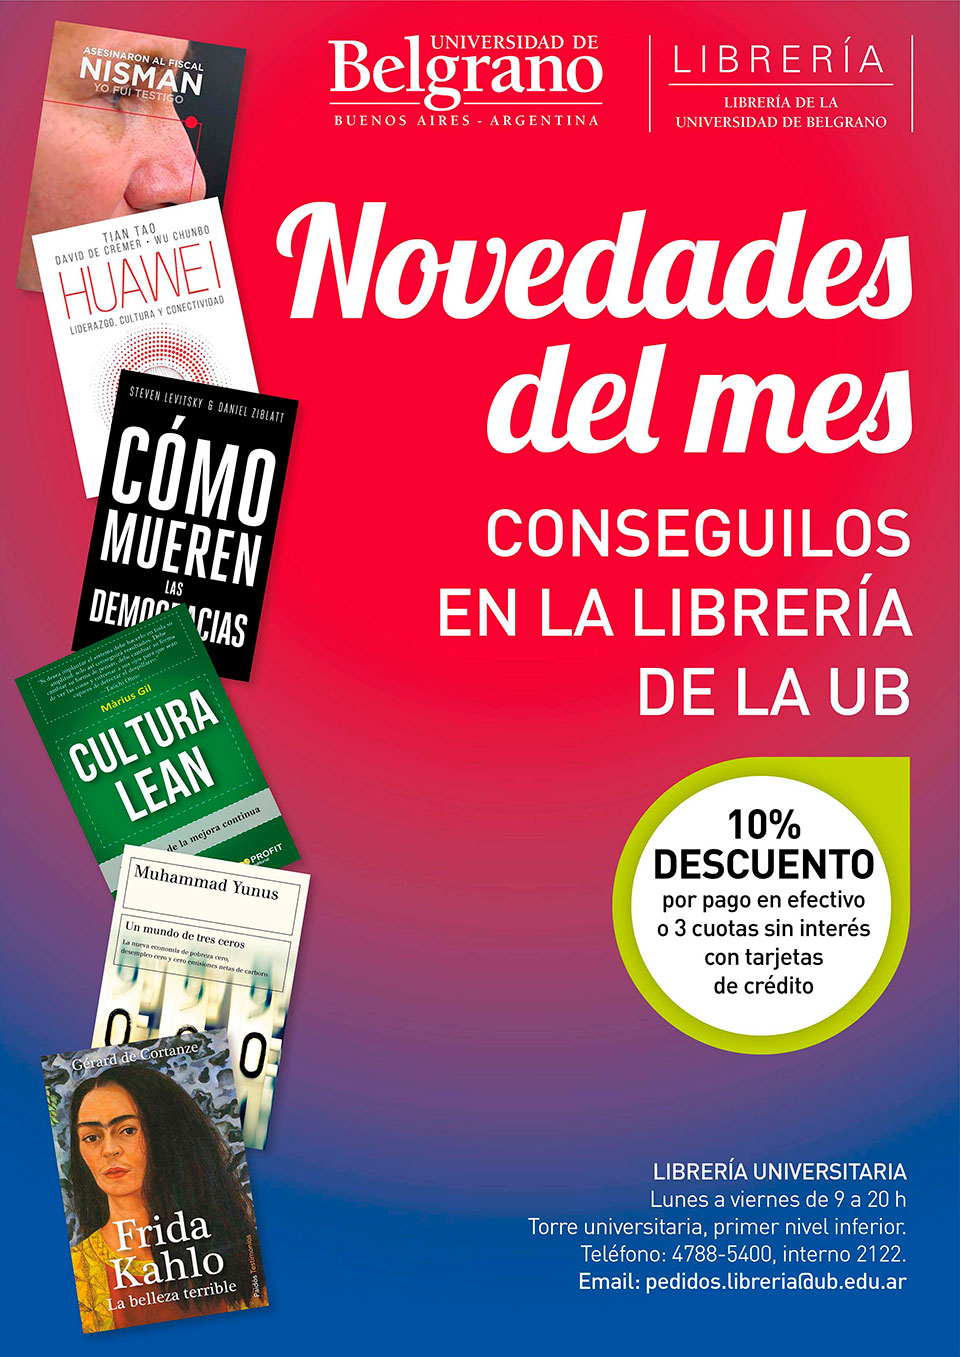 Universidad de Belgrano | Novedades del Mes en la Librería de la UB